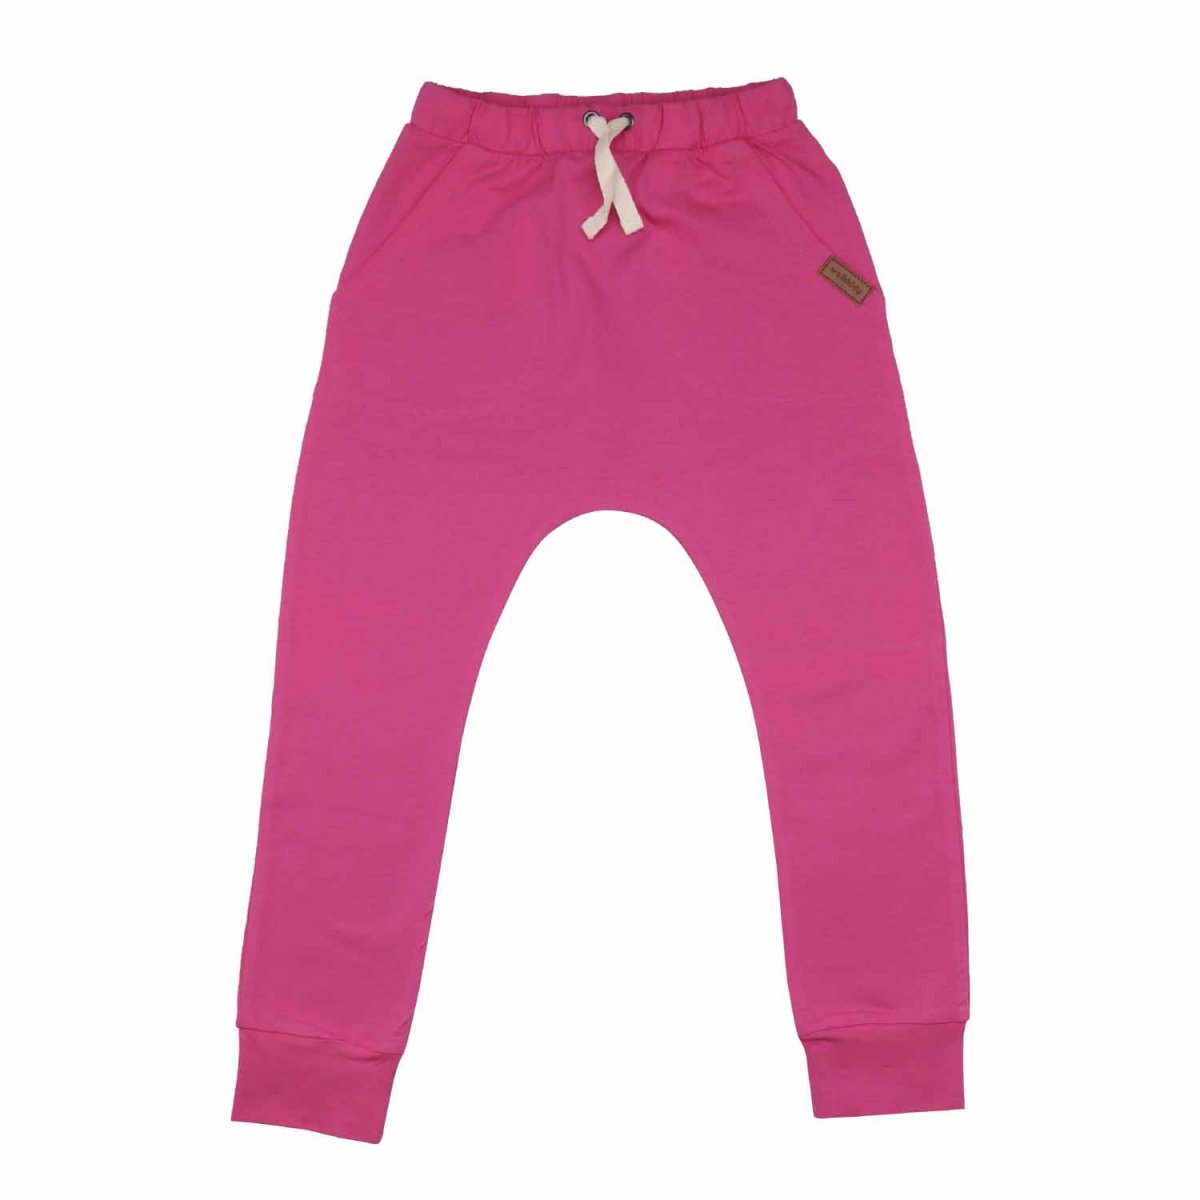 Pantaloni Baggy rosa scuro per bambine in cotone biologico